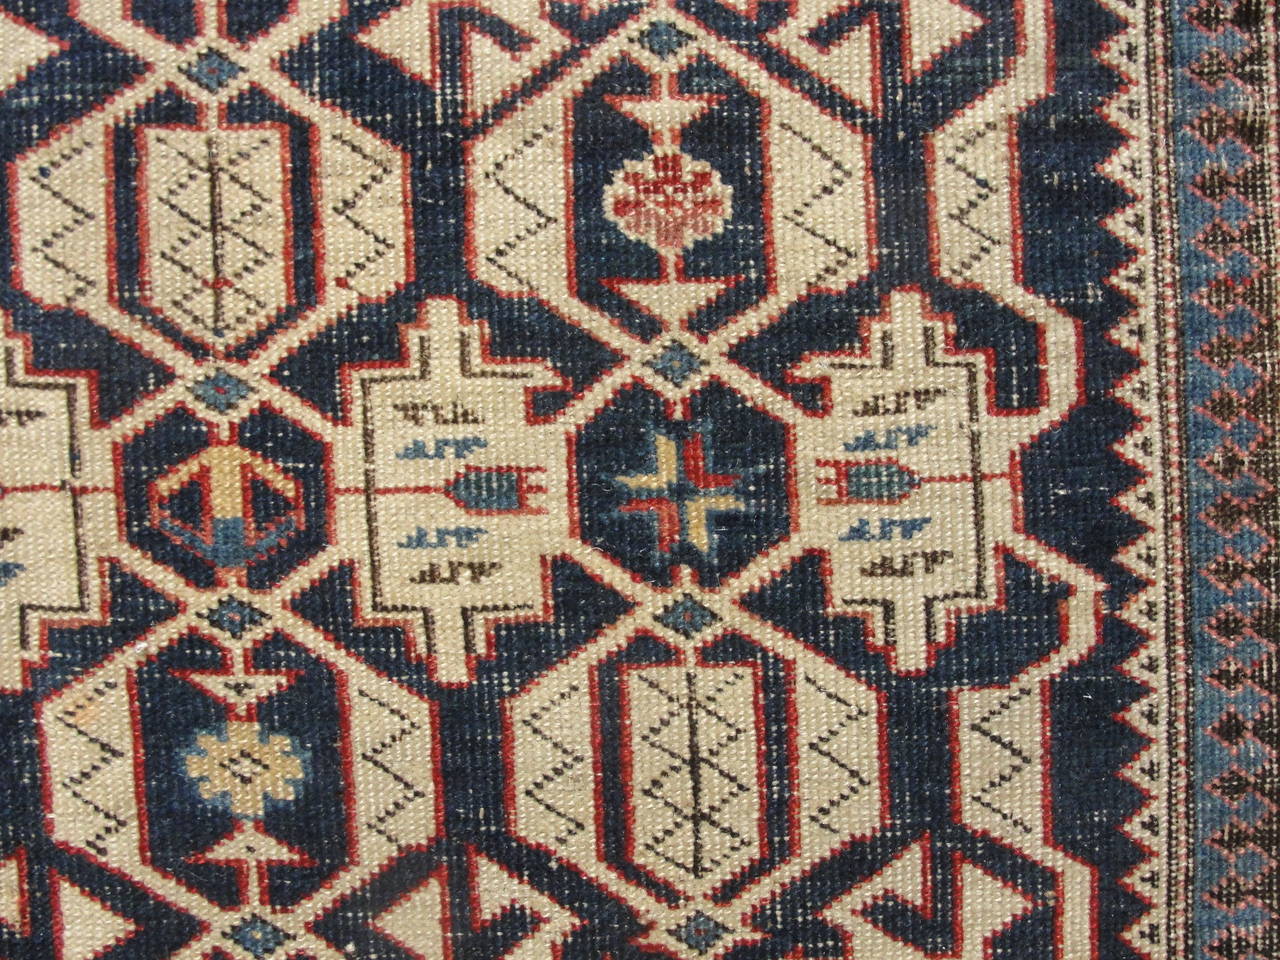 19th Century Antique Caucasian Kuba Rug